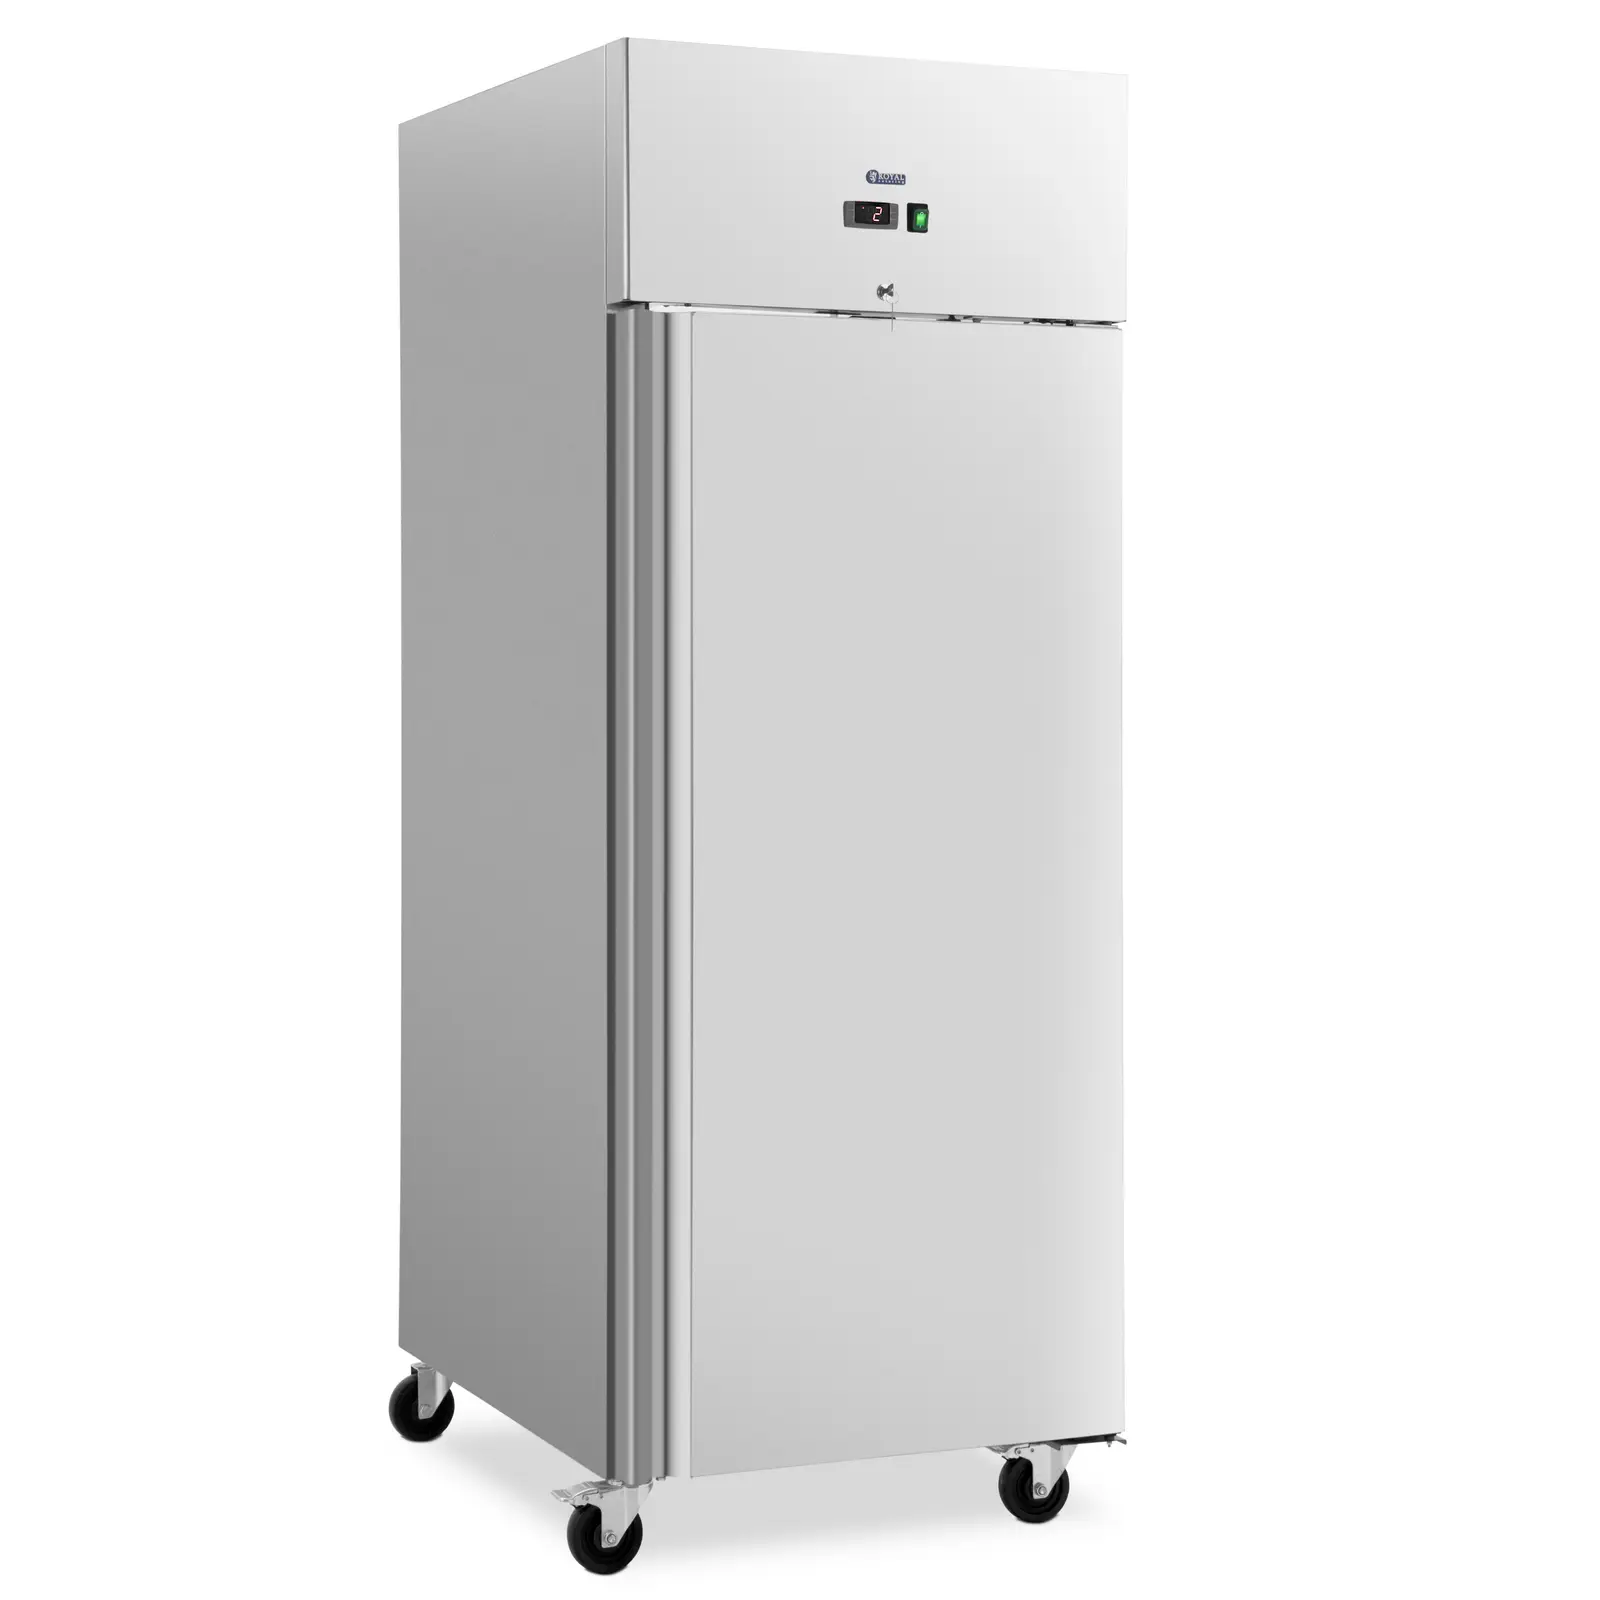 Ipari hűtőszekrény - 750 l - rozsdamentes acél - 1 ajtó - 4 görgő - Royal Catering